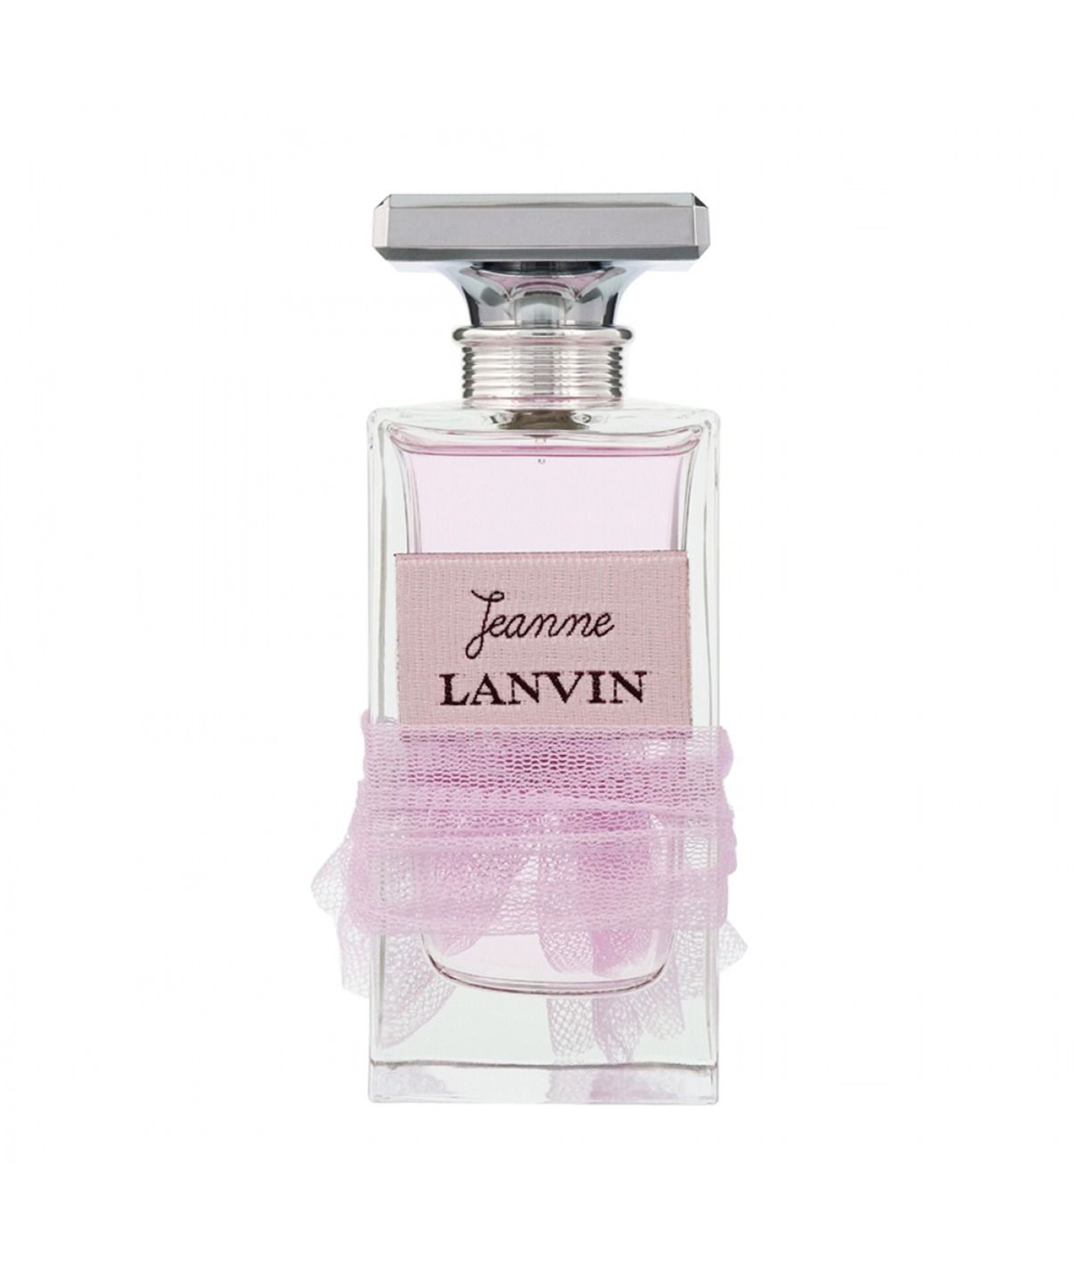 Perfume «Lanvin» Jeanne, for women, 30 ml